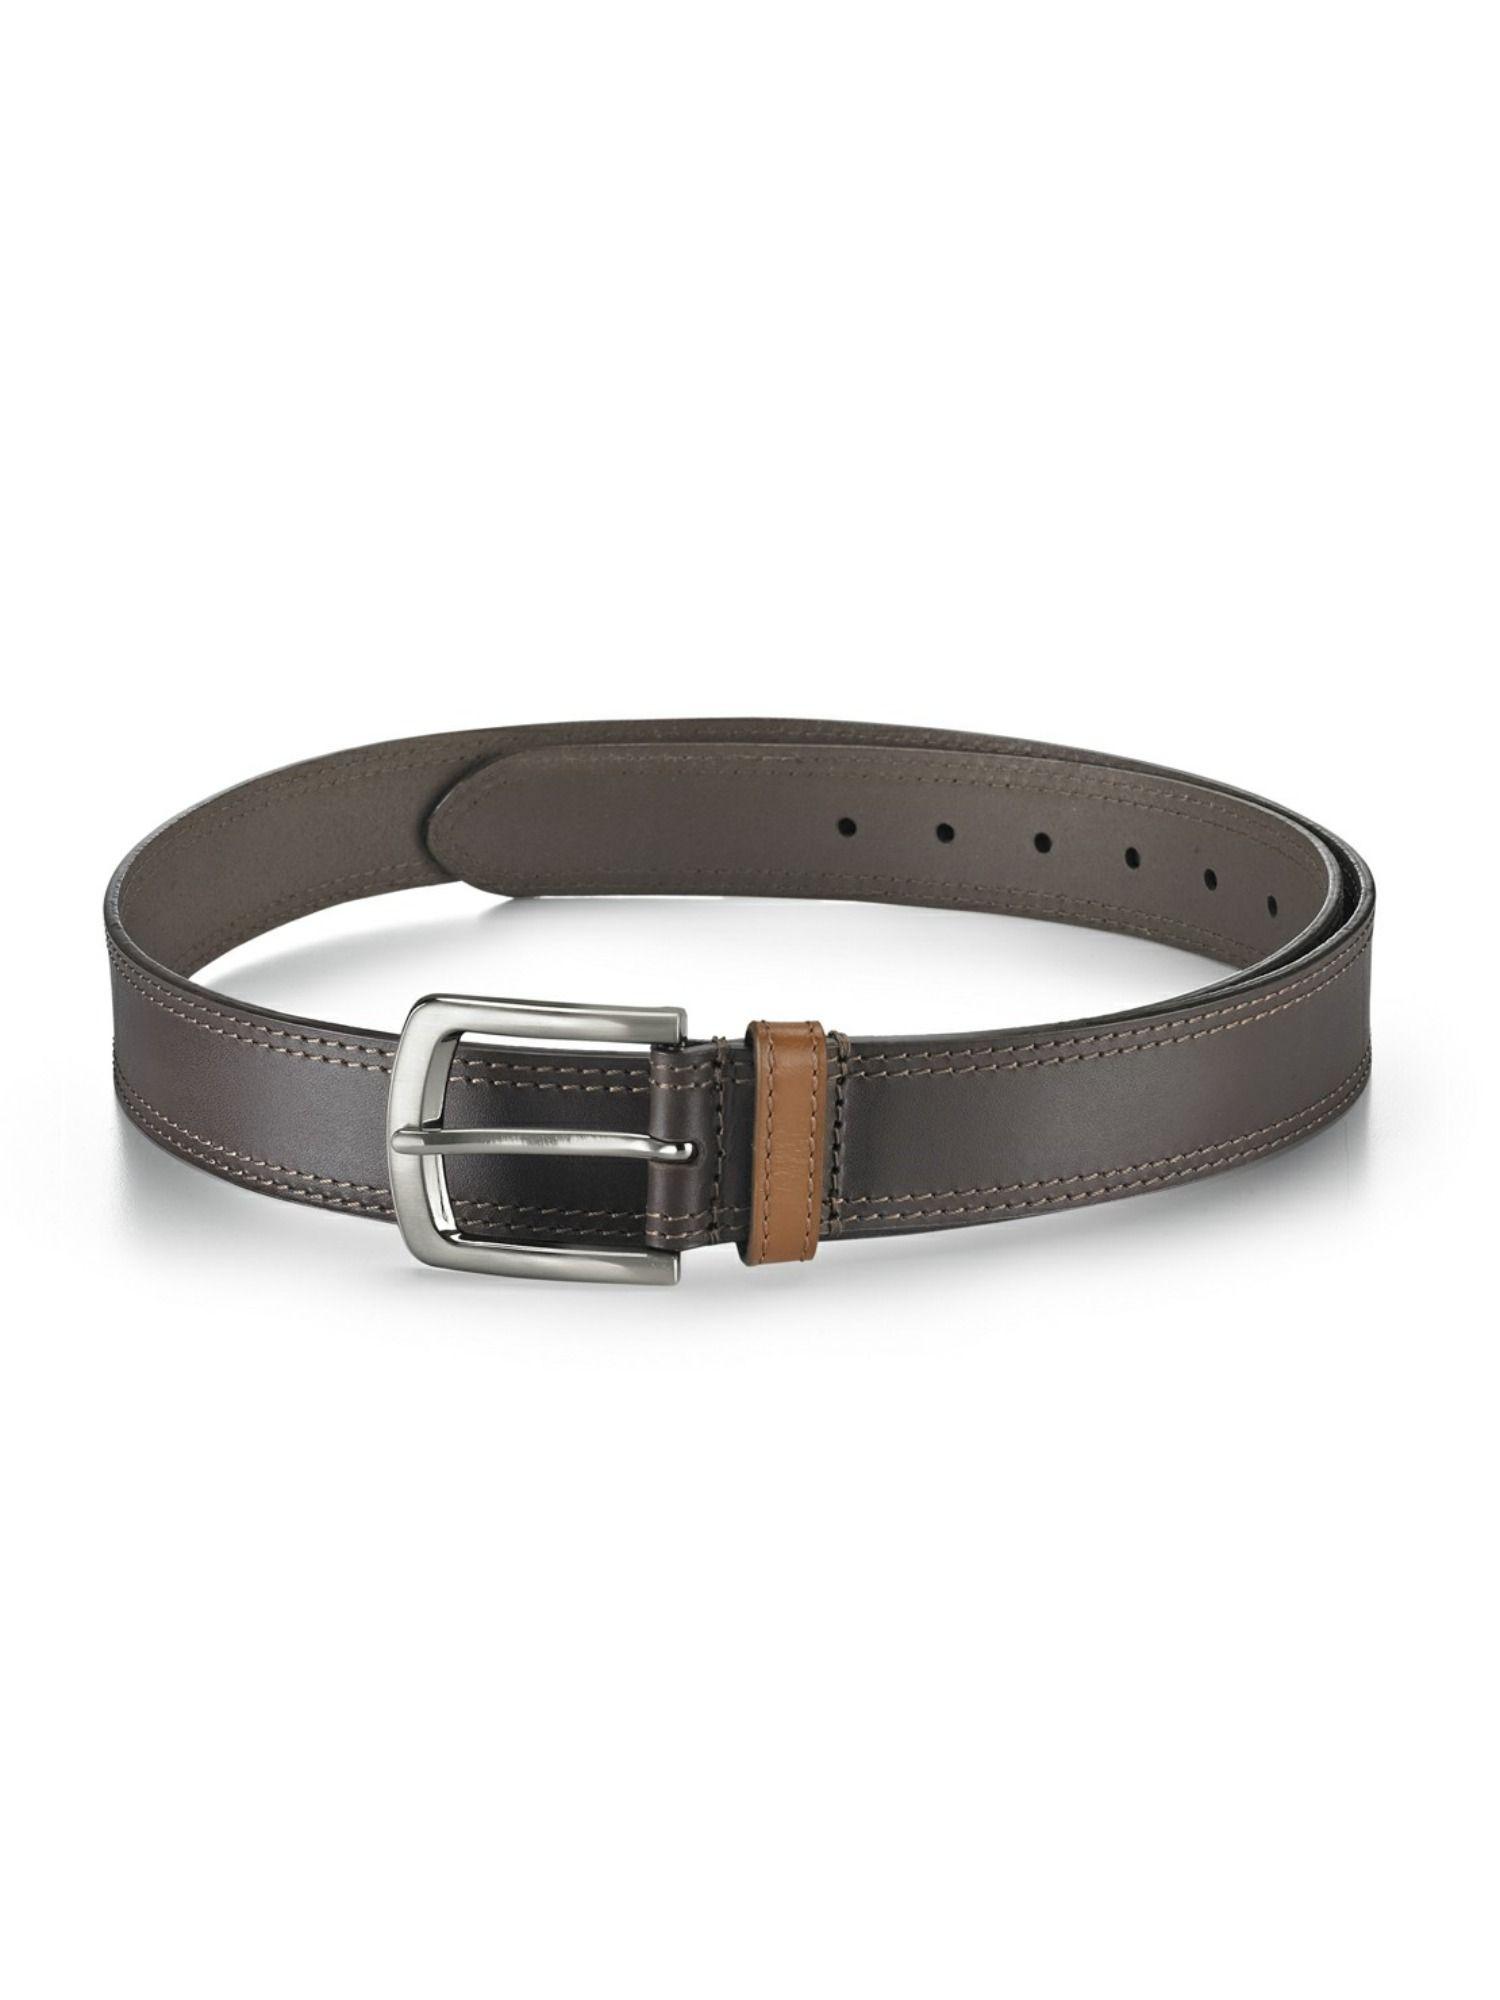 formal brown belt